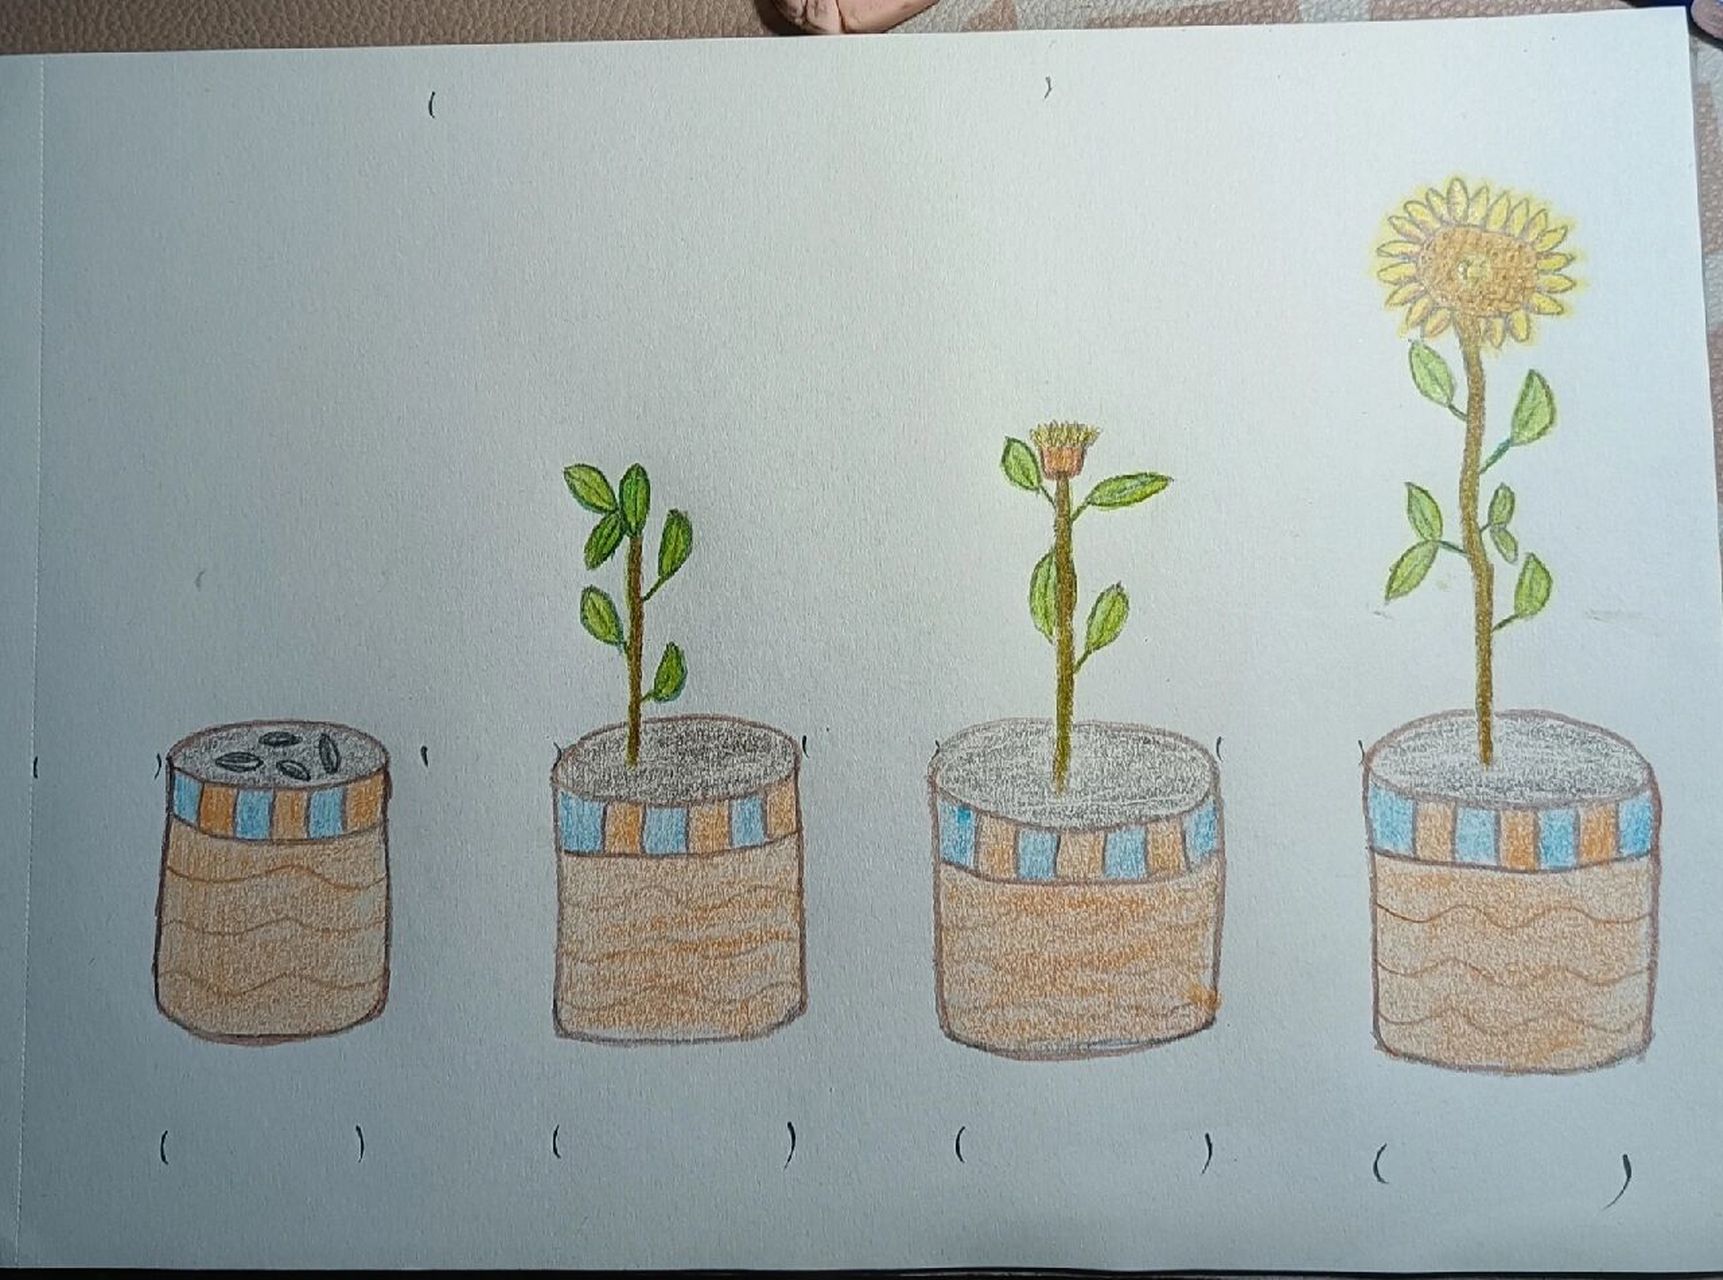 向日葵生长过程手绘图片